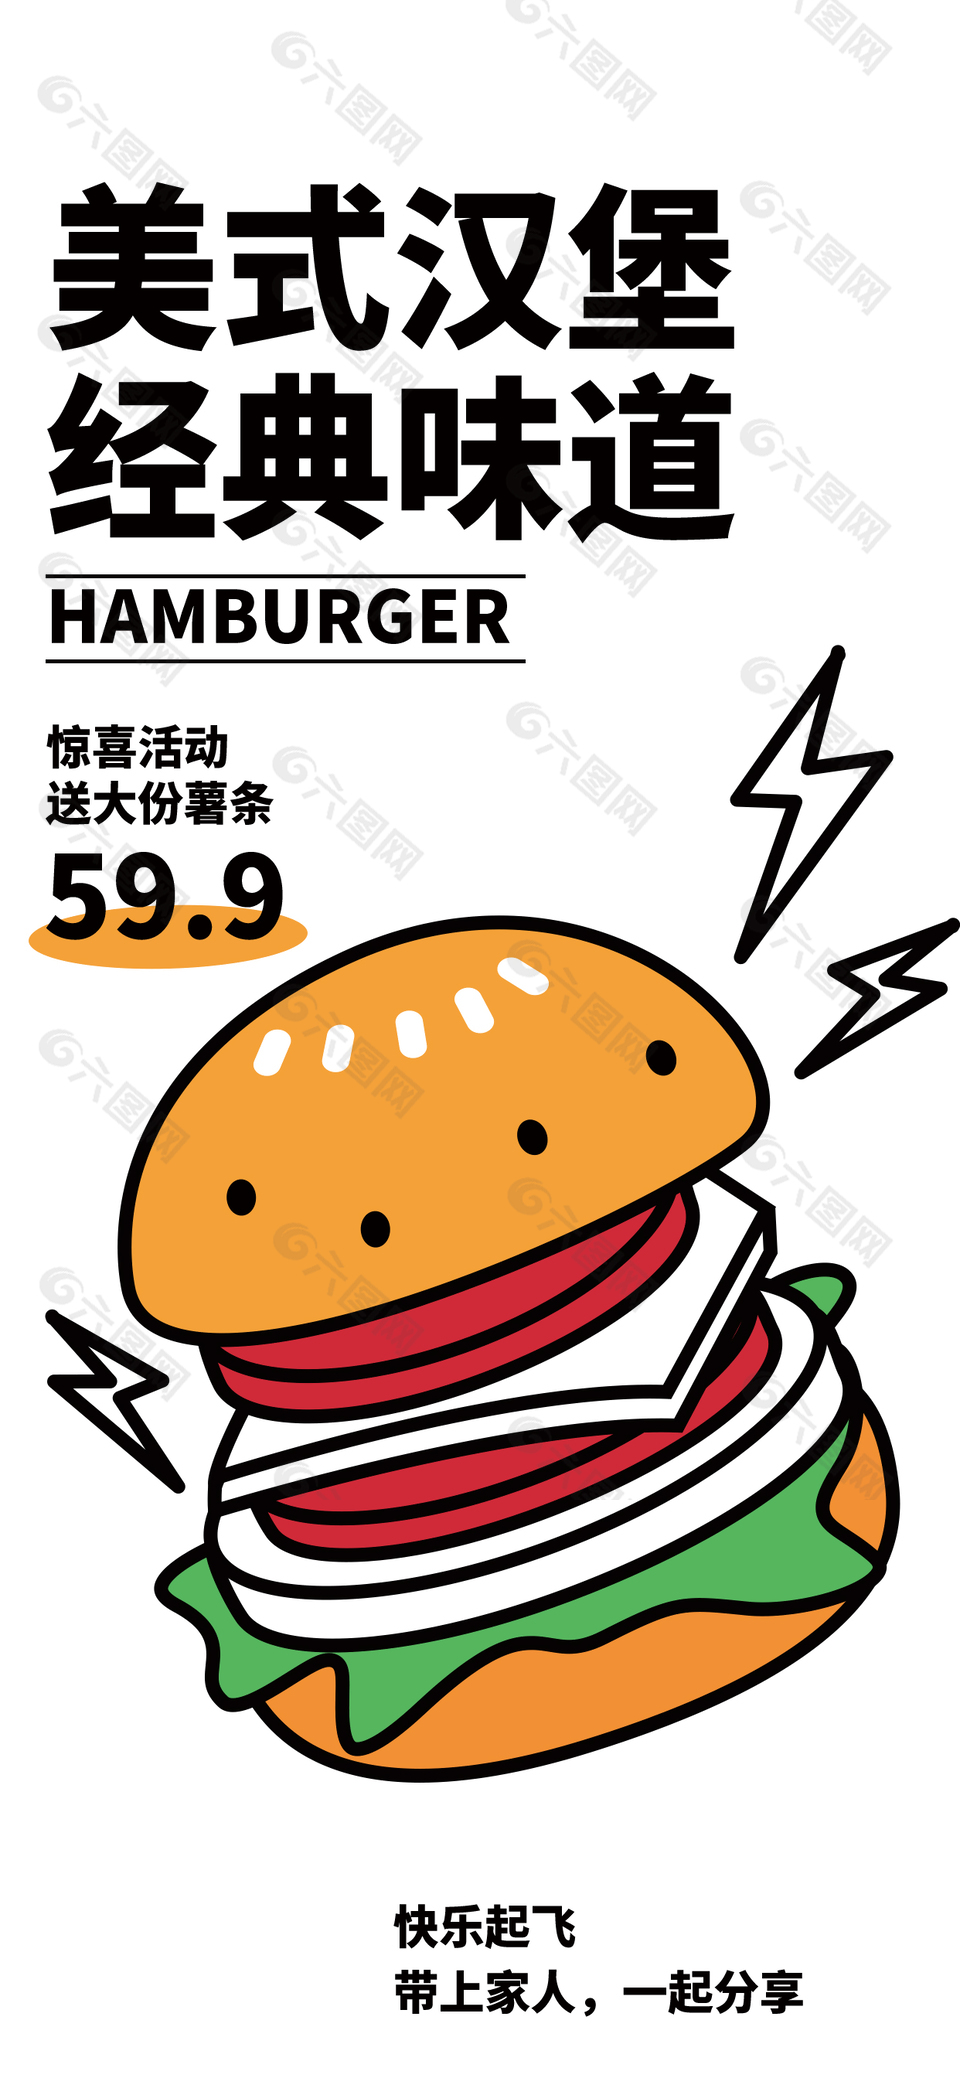 美式汉堡创意卡通海报素材下载